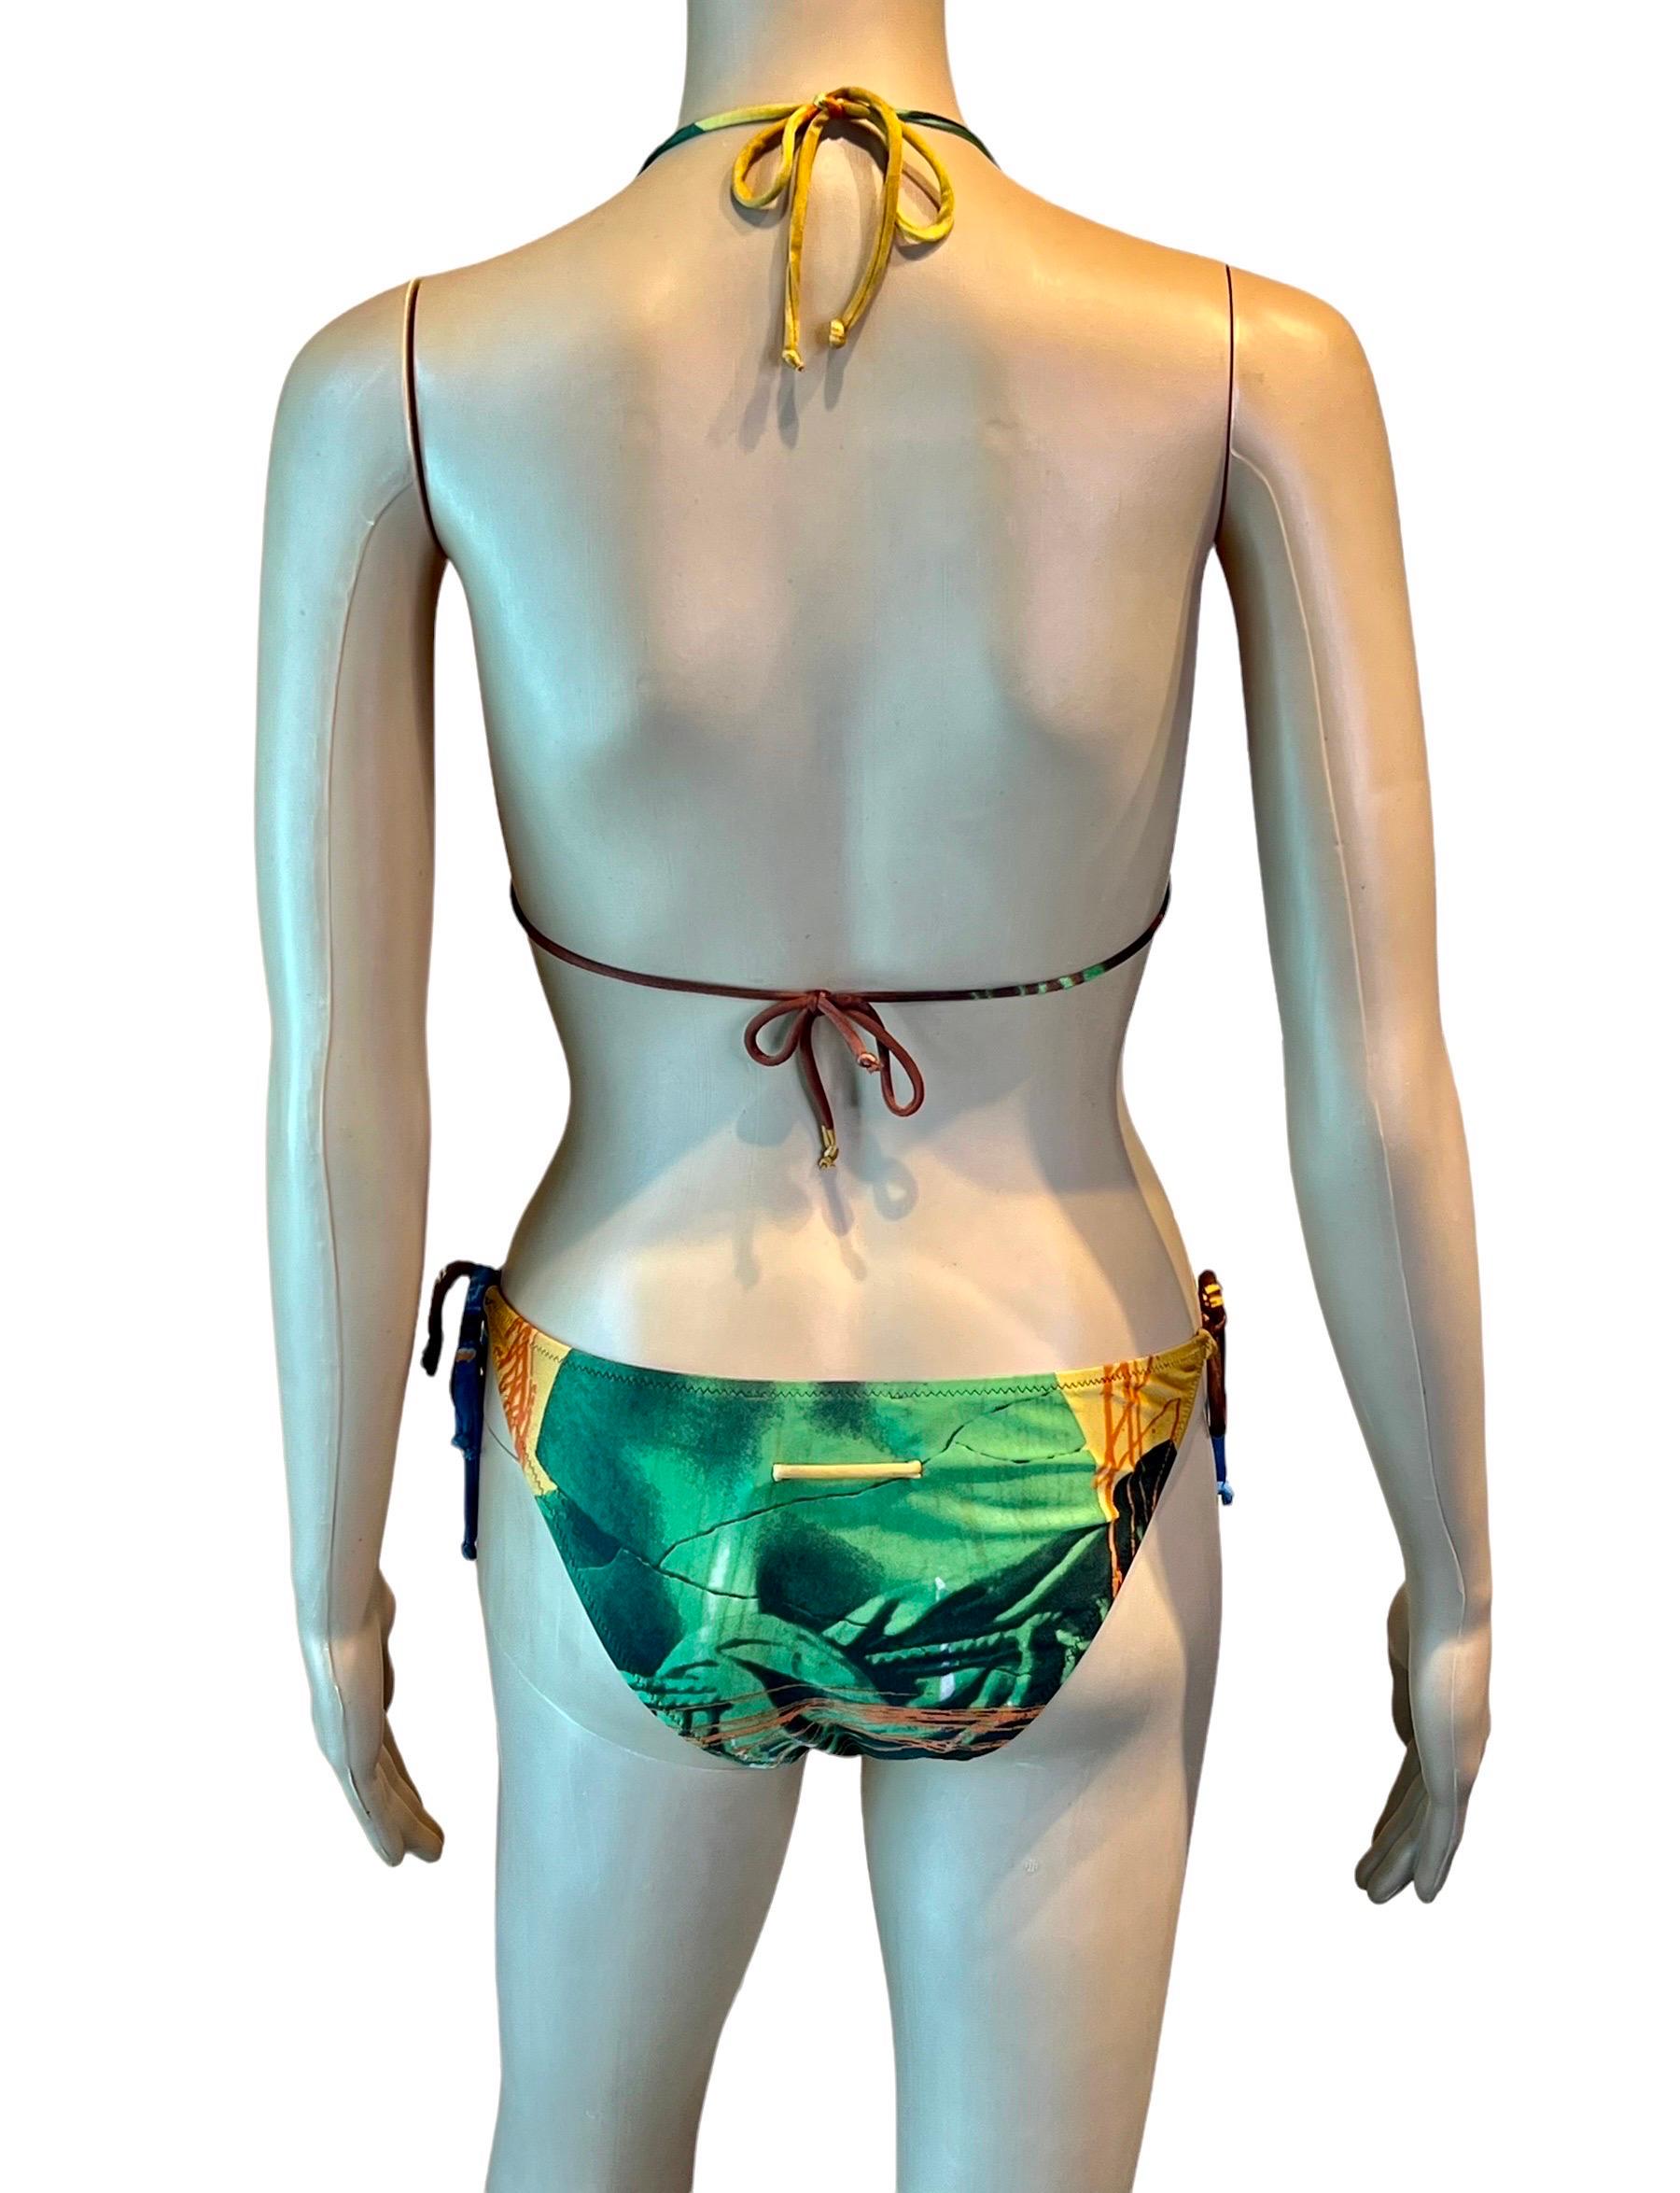 Brown Jean Paul Gaultier S/S 1999 Venus de Milo Bikini Swimwear Swimsuit 2 Piece Set